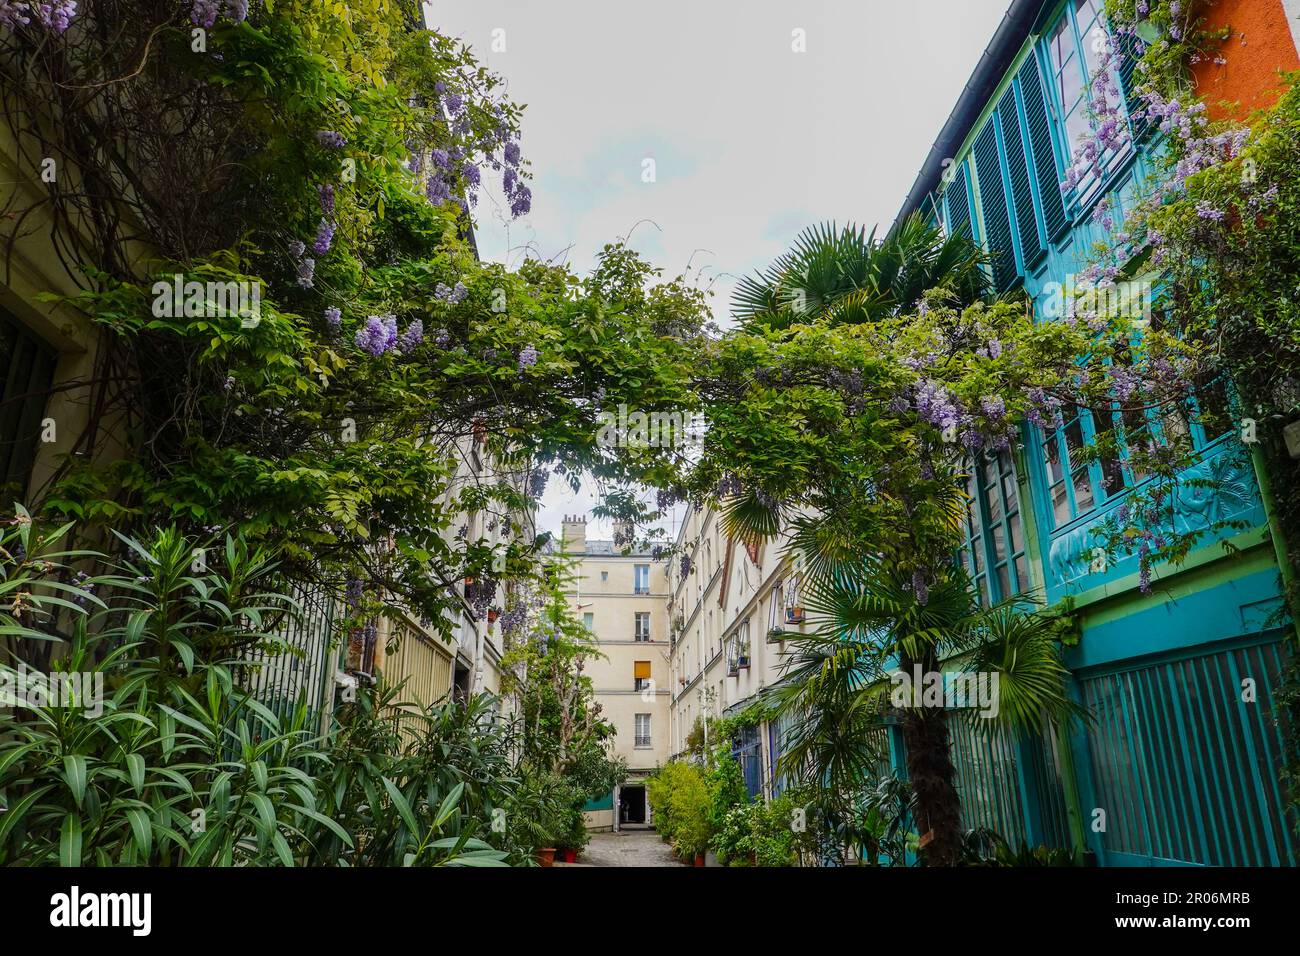 Plantes luxuriantes, la Cité du Figuier, rue cachée dans le 11th arrondissement, connue comme endroit où les ouvriers en métal avaient des magasins au cours du 19th siècle, Paris. Banque D'Images